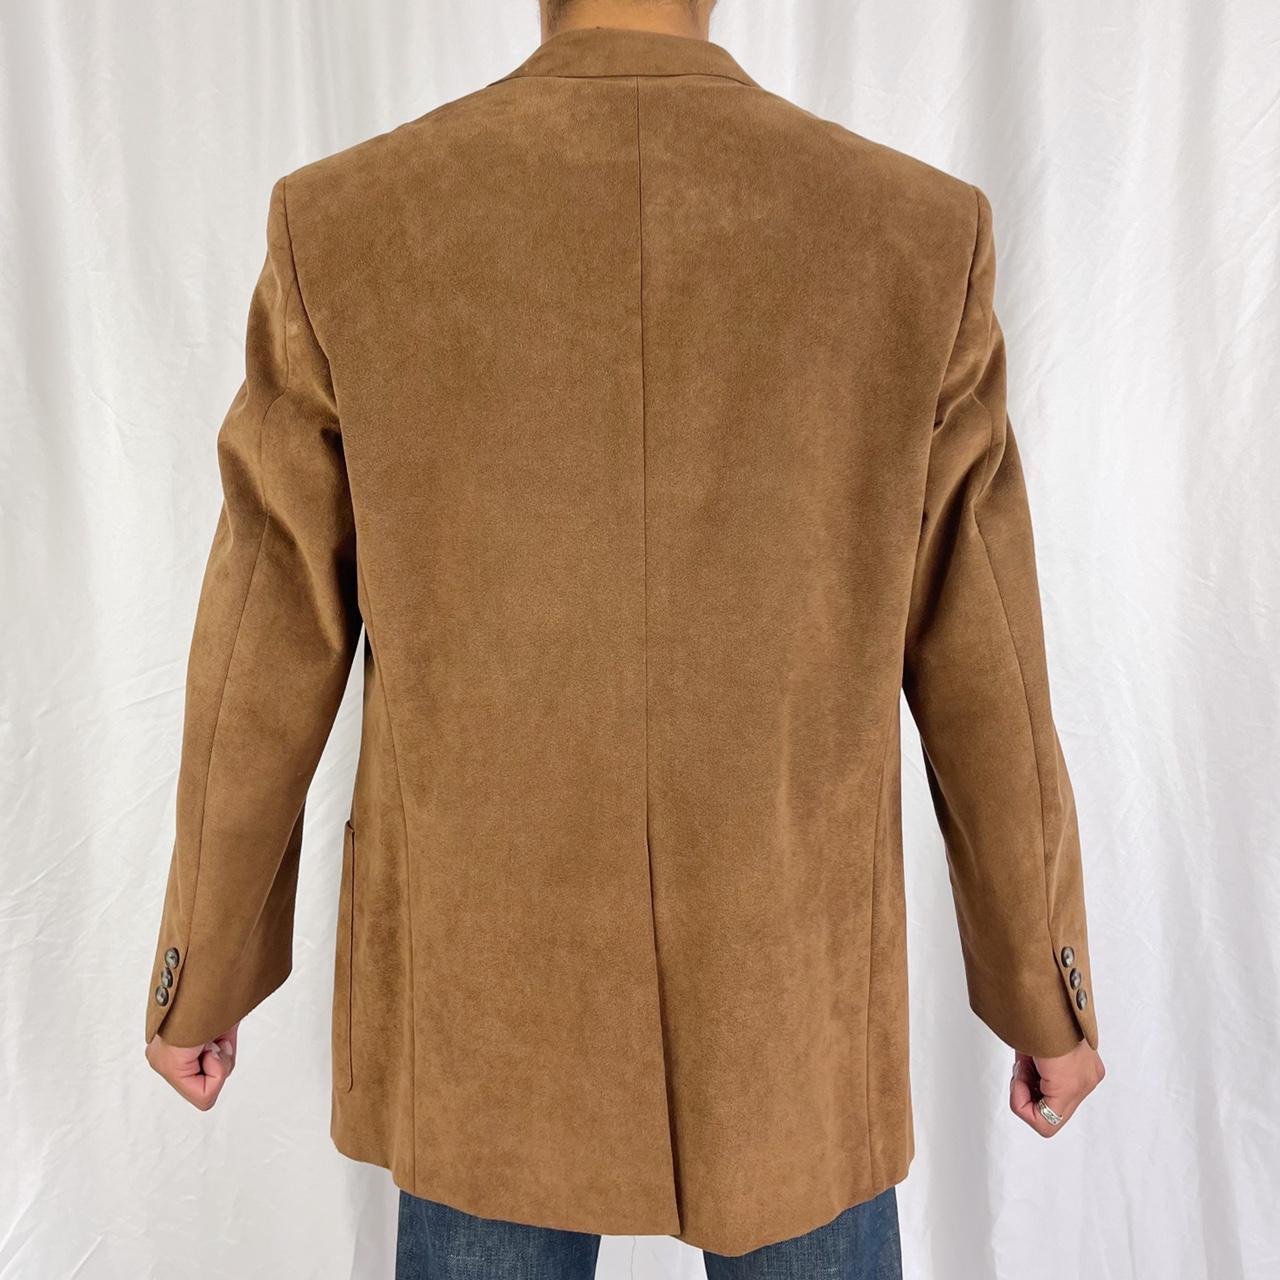 American Vintage Men's Tan and Brown Jacket (3)